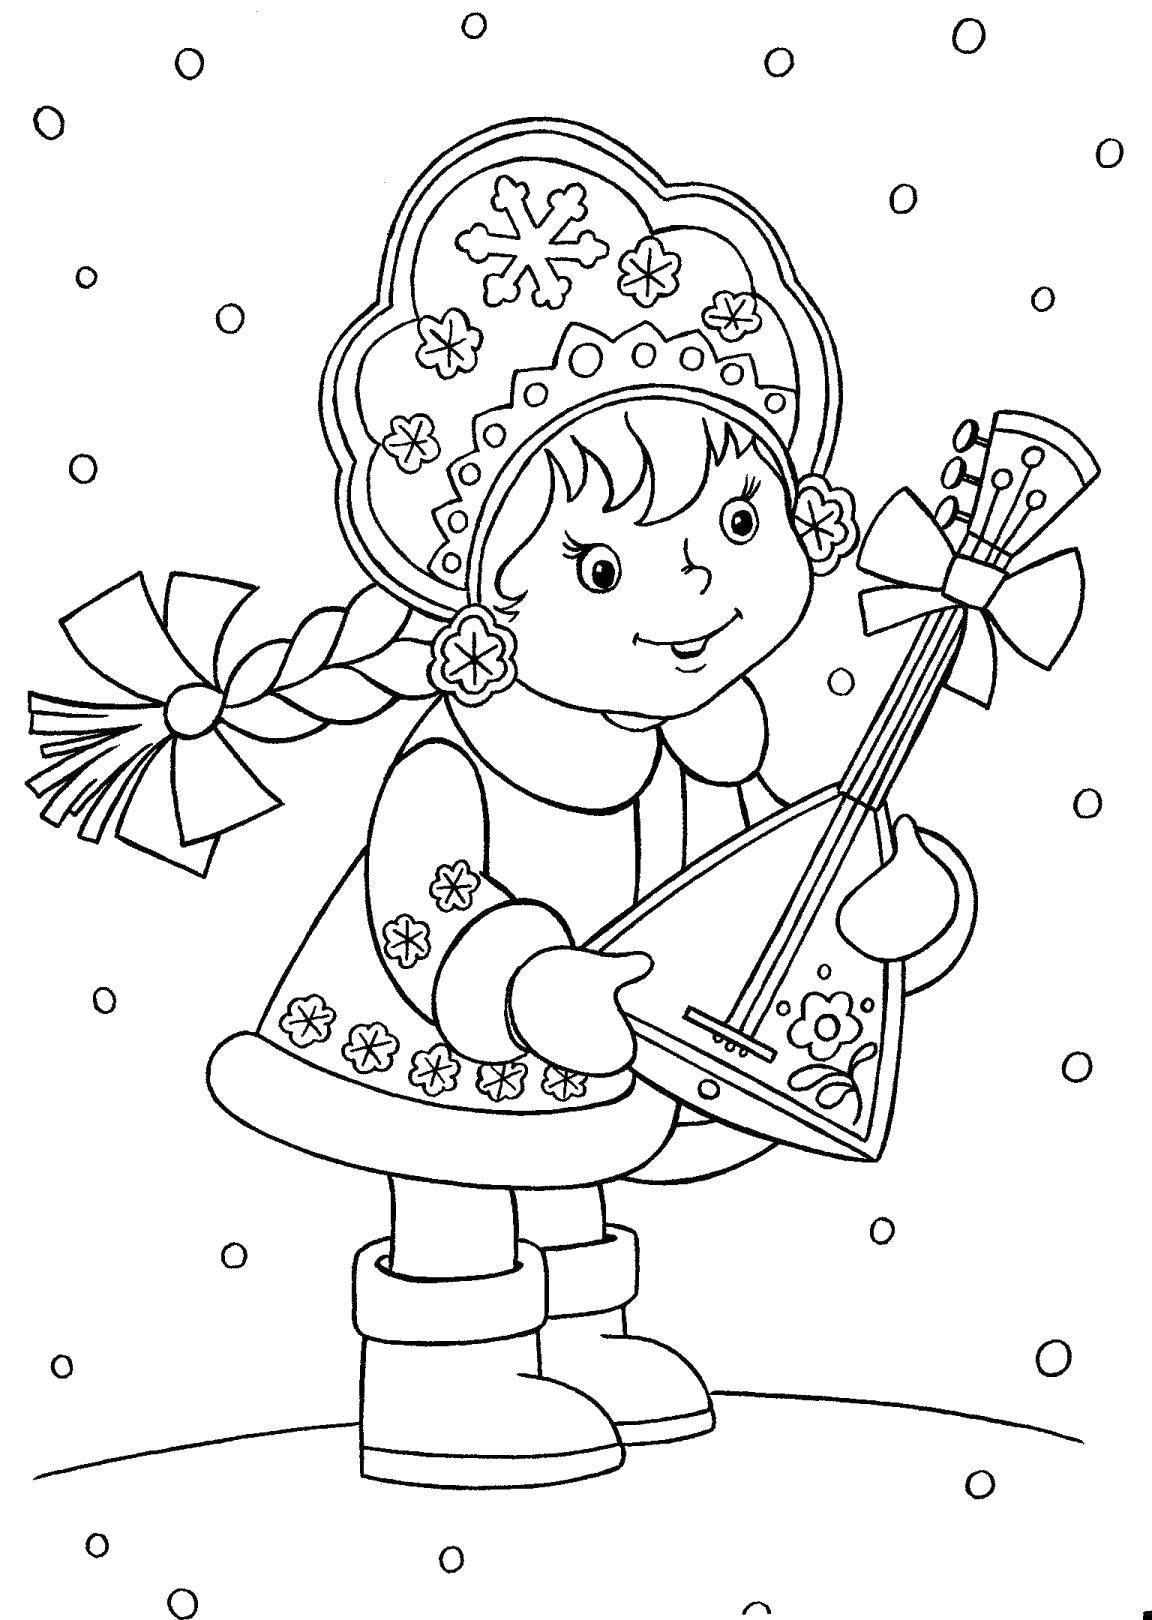 Раскраска с снегурочкой и балалайкой для девочек из сказок (снегурочка, балалайка, развивающие, праздники)